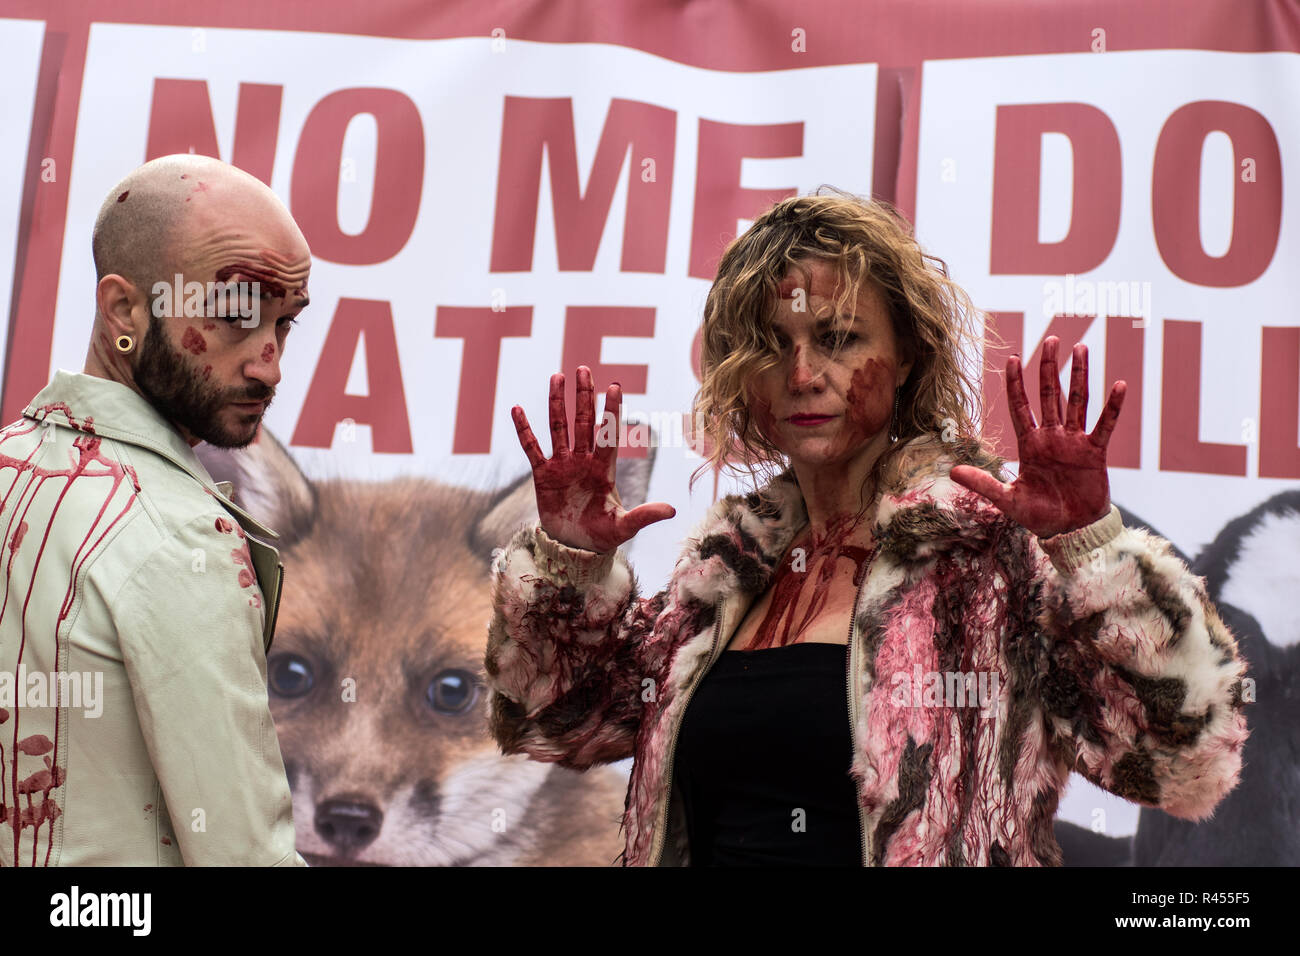 Madrid, Espagne, 25 novembre 2018.Les activistes des droits des animaux-pro groupe 'Gladiadores por la paz" (pour la paix) gladiateurs couverts de faux sang d'effectuer une manifestation sous le slogan 'Catwalk de la souffrance", pour protester contre l'utilisation de peaux d'animaux dans l'industrie de la fourrure. Credit : Marcos del Mazo/Alamy Live News Banque D'Images